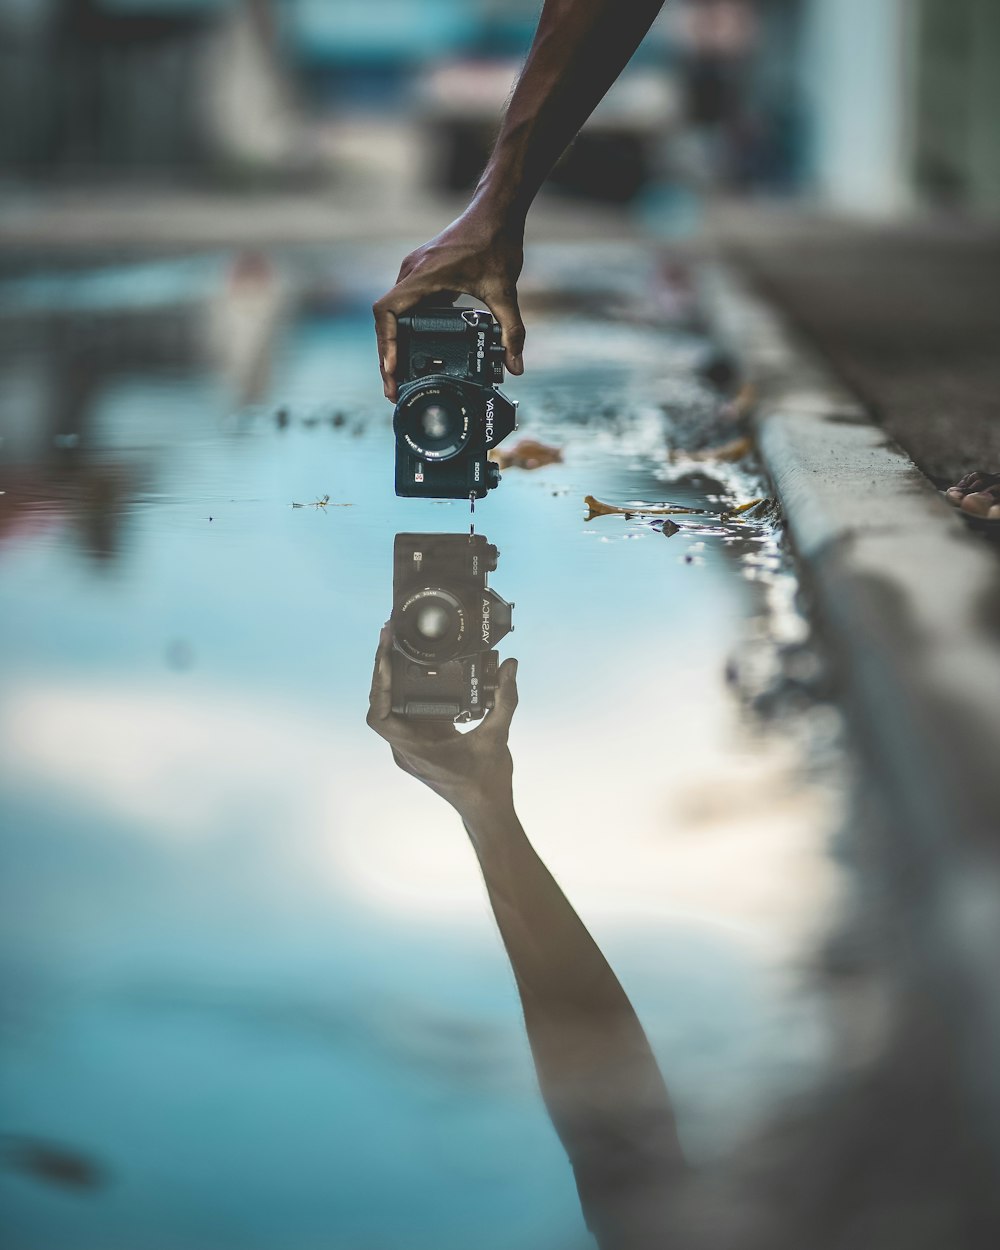 photographie miroir d’une personne tenant un appareil photo reflex numérique avec réflexion sur l’eau